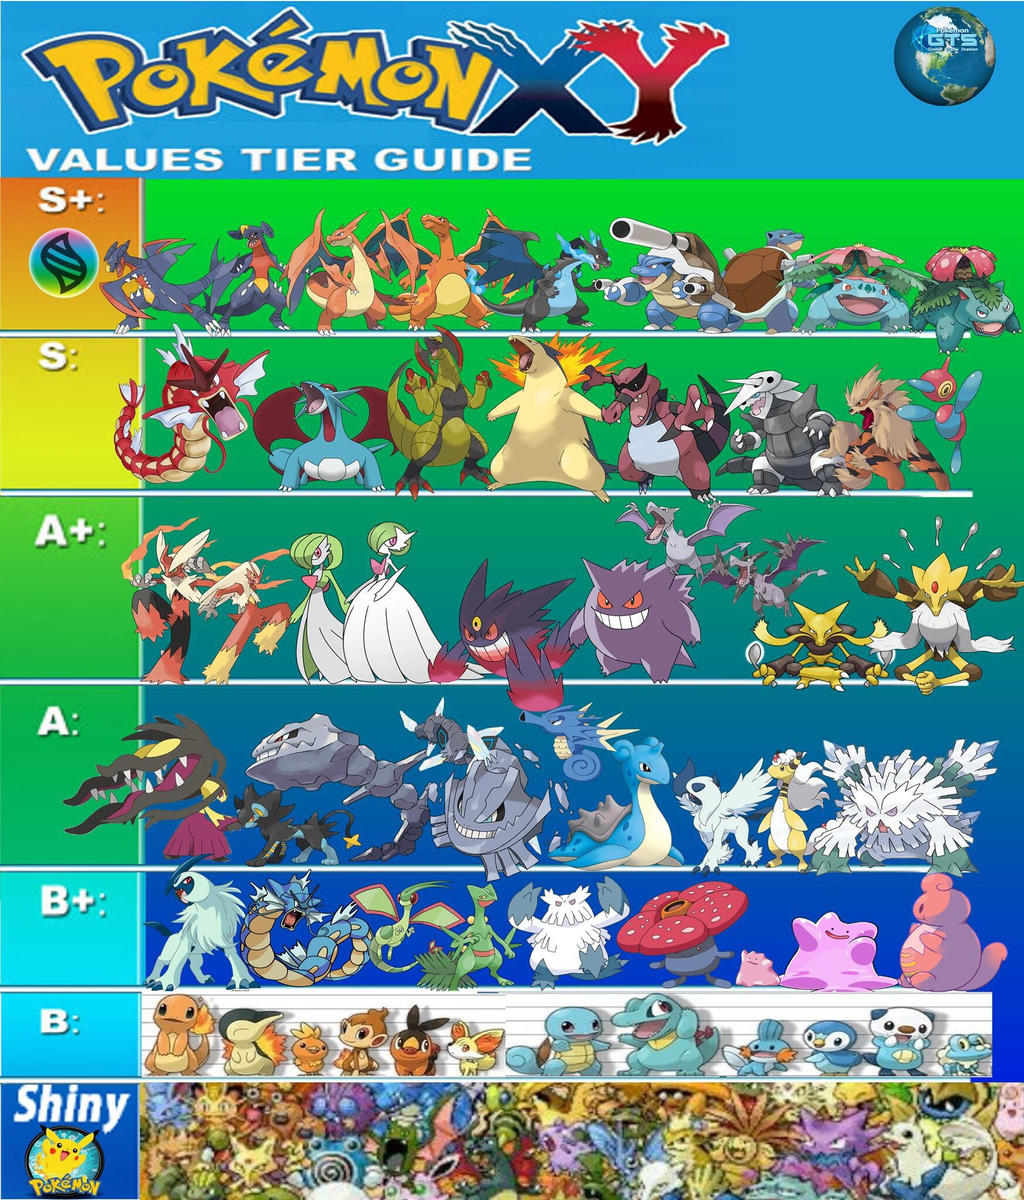 Pokemon X Y Gts Trading Values Tier Guide 1 By Elderguardian On Deviantart